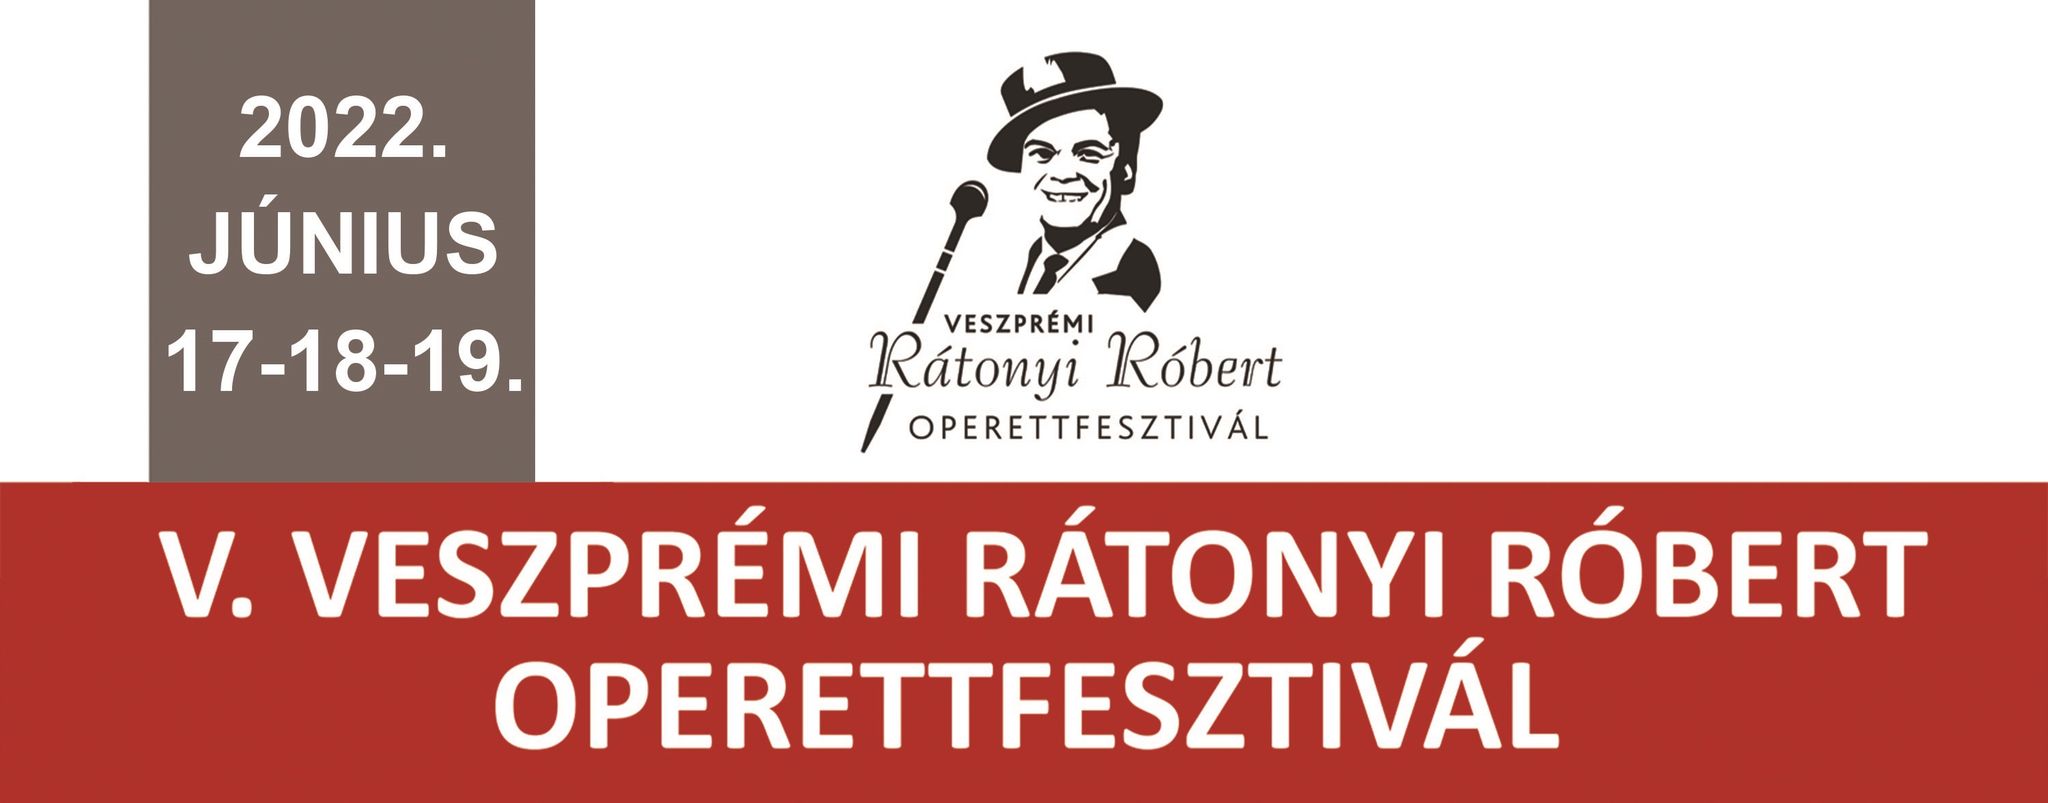 Júniusban rendezik meg az V. Veszprémi Rátonyi Róbert Operettfesztivált